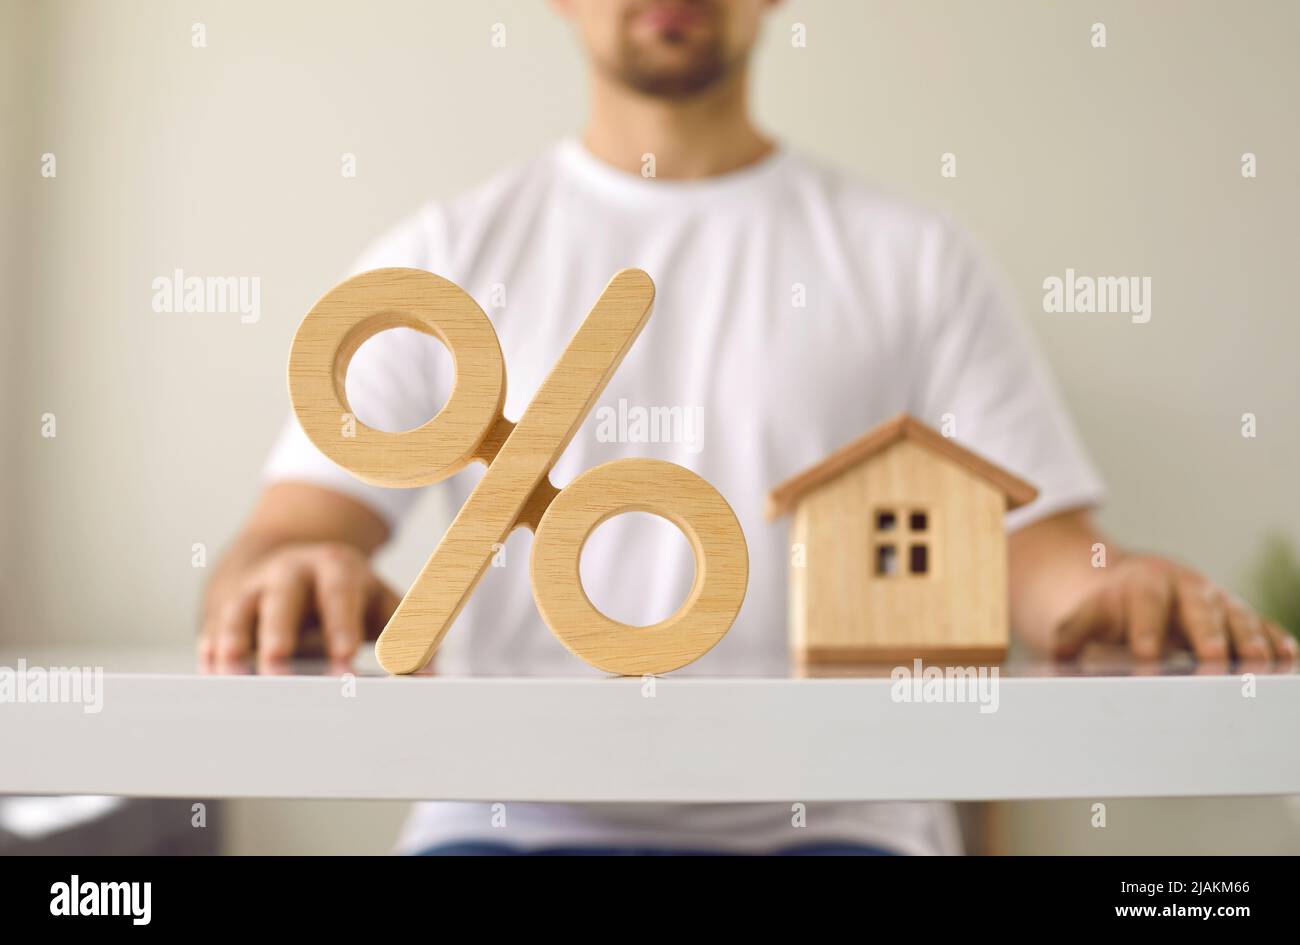 Segno di percentuale, uomo e casa che illustrano i tassi di interesse ipotecari e concetto di bene immobile Foto Stock